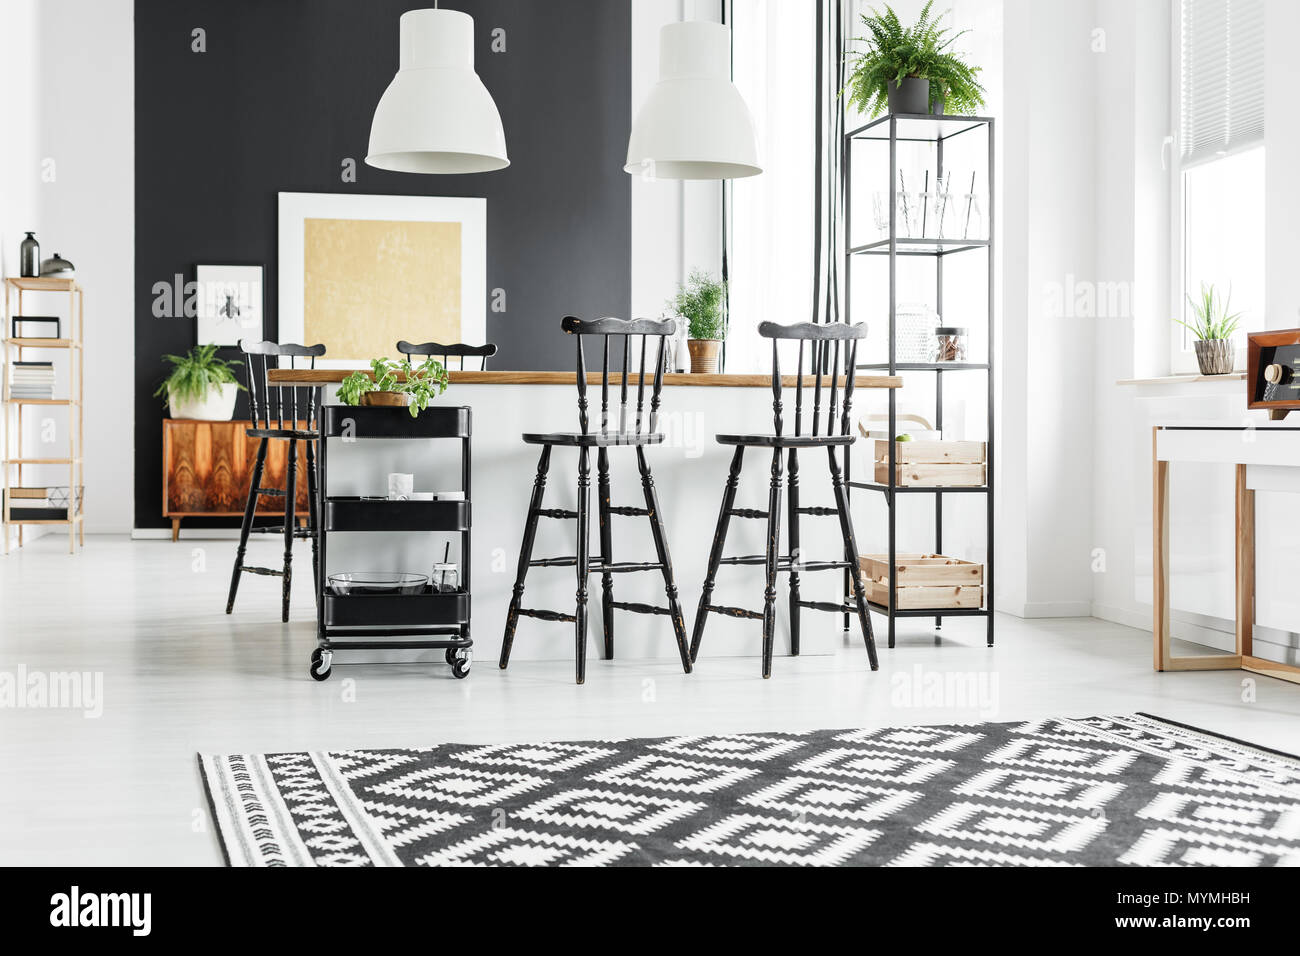 Alfombras geométricas en blanco y negro en la rústica cocina con taburetes en la encimera de madera Foto de stock